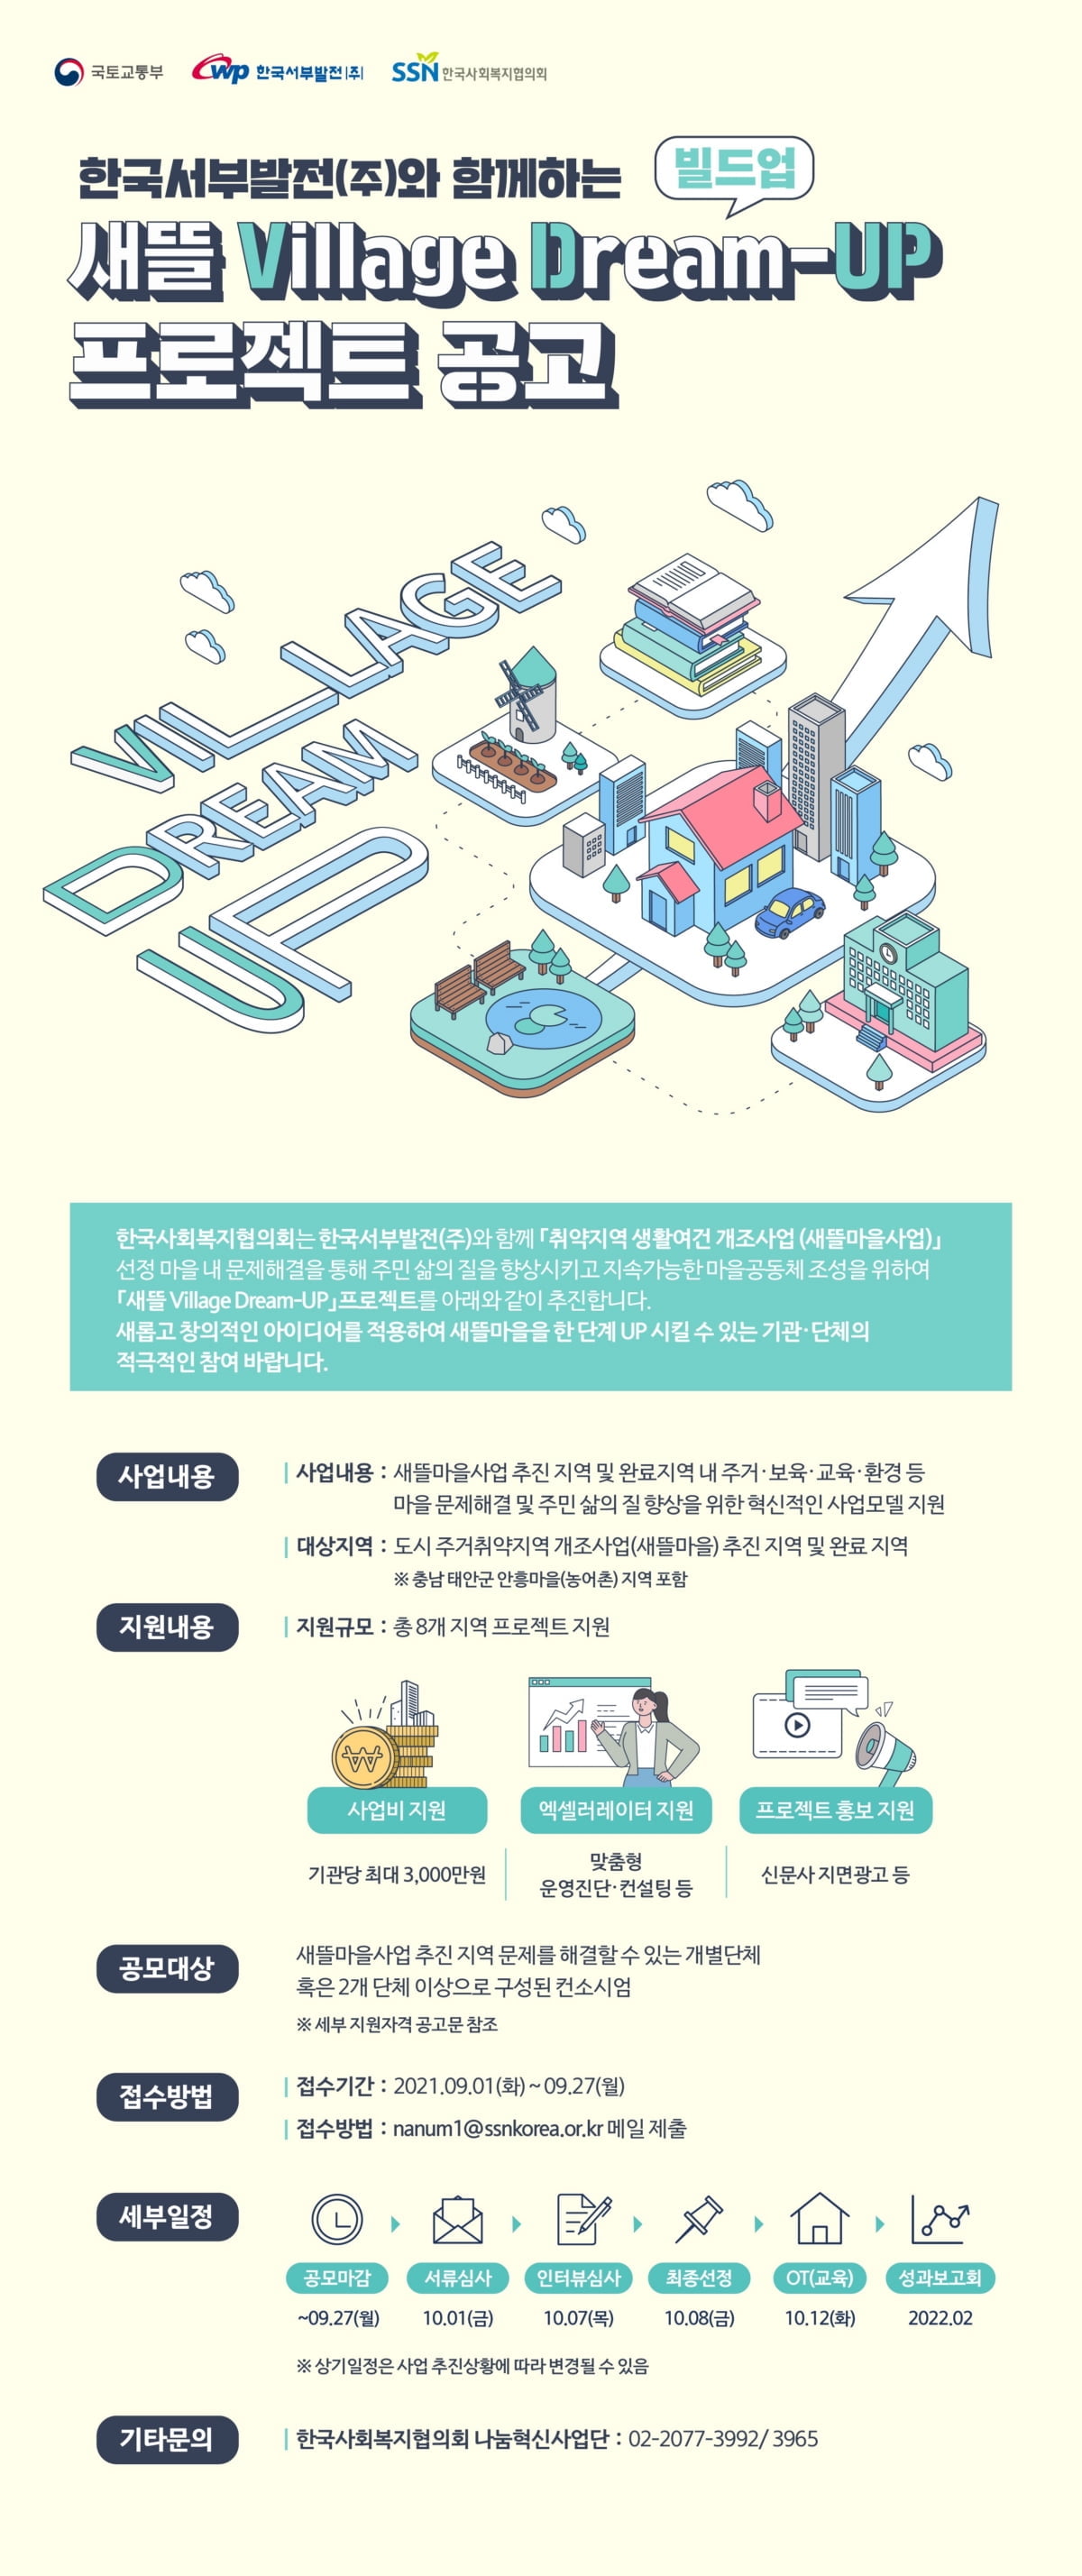 국토부-사회복지협-서부발전, ‘2021년 새뜰 Village Dream-UP 프로젝트’ 공모 추진